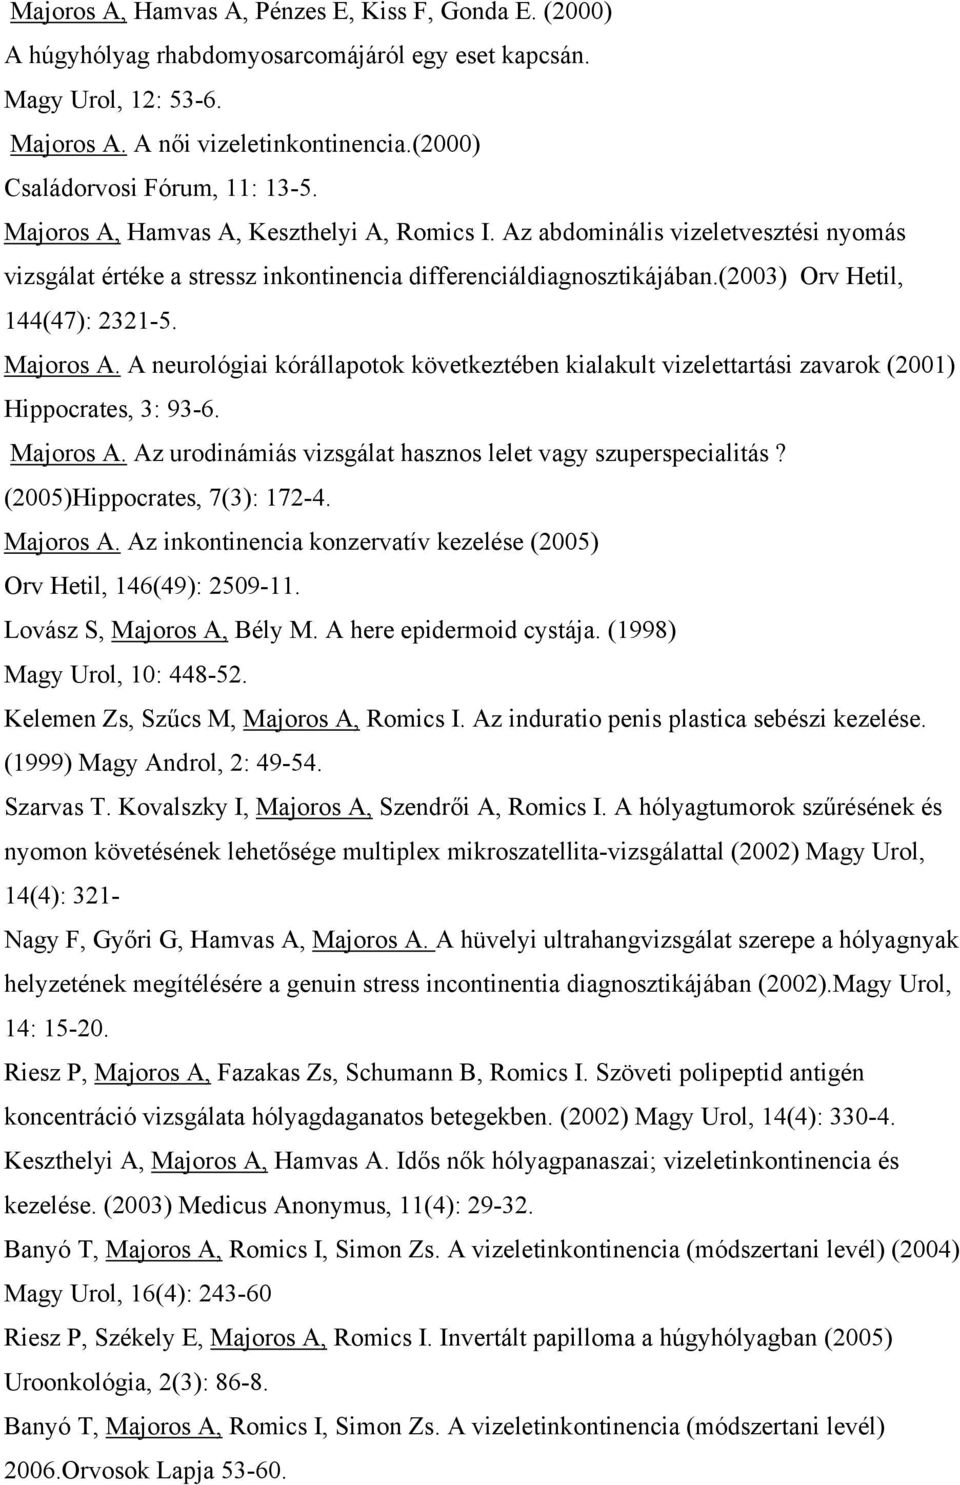 (2003) Orv Hetil, 144(47): 2321-5. Majoros A. A neurológiai kórállapotok következtében kialakult vizelettartási zavarok (2001) Hippocrates, 3: 93-6. Majoros A. Az urodinámiás vizsgálat hasznos lelet vagy szuperspecialitás?